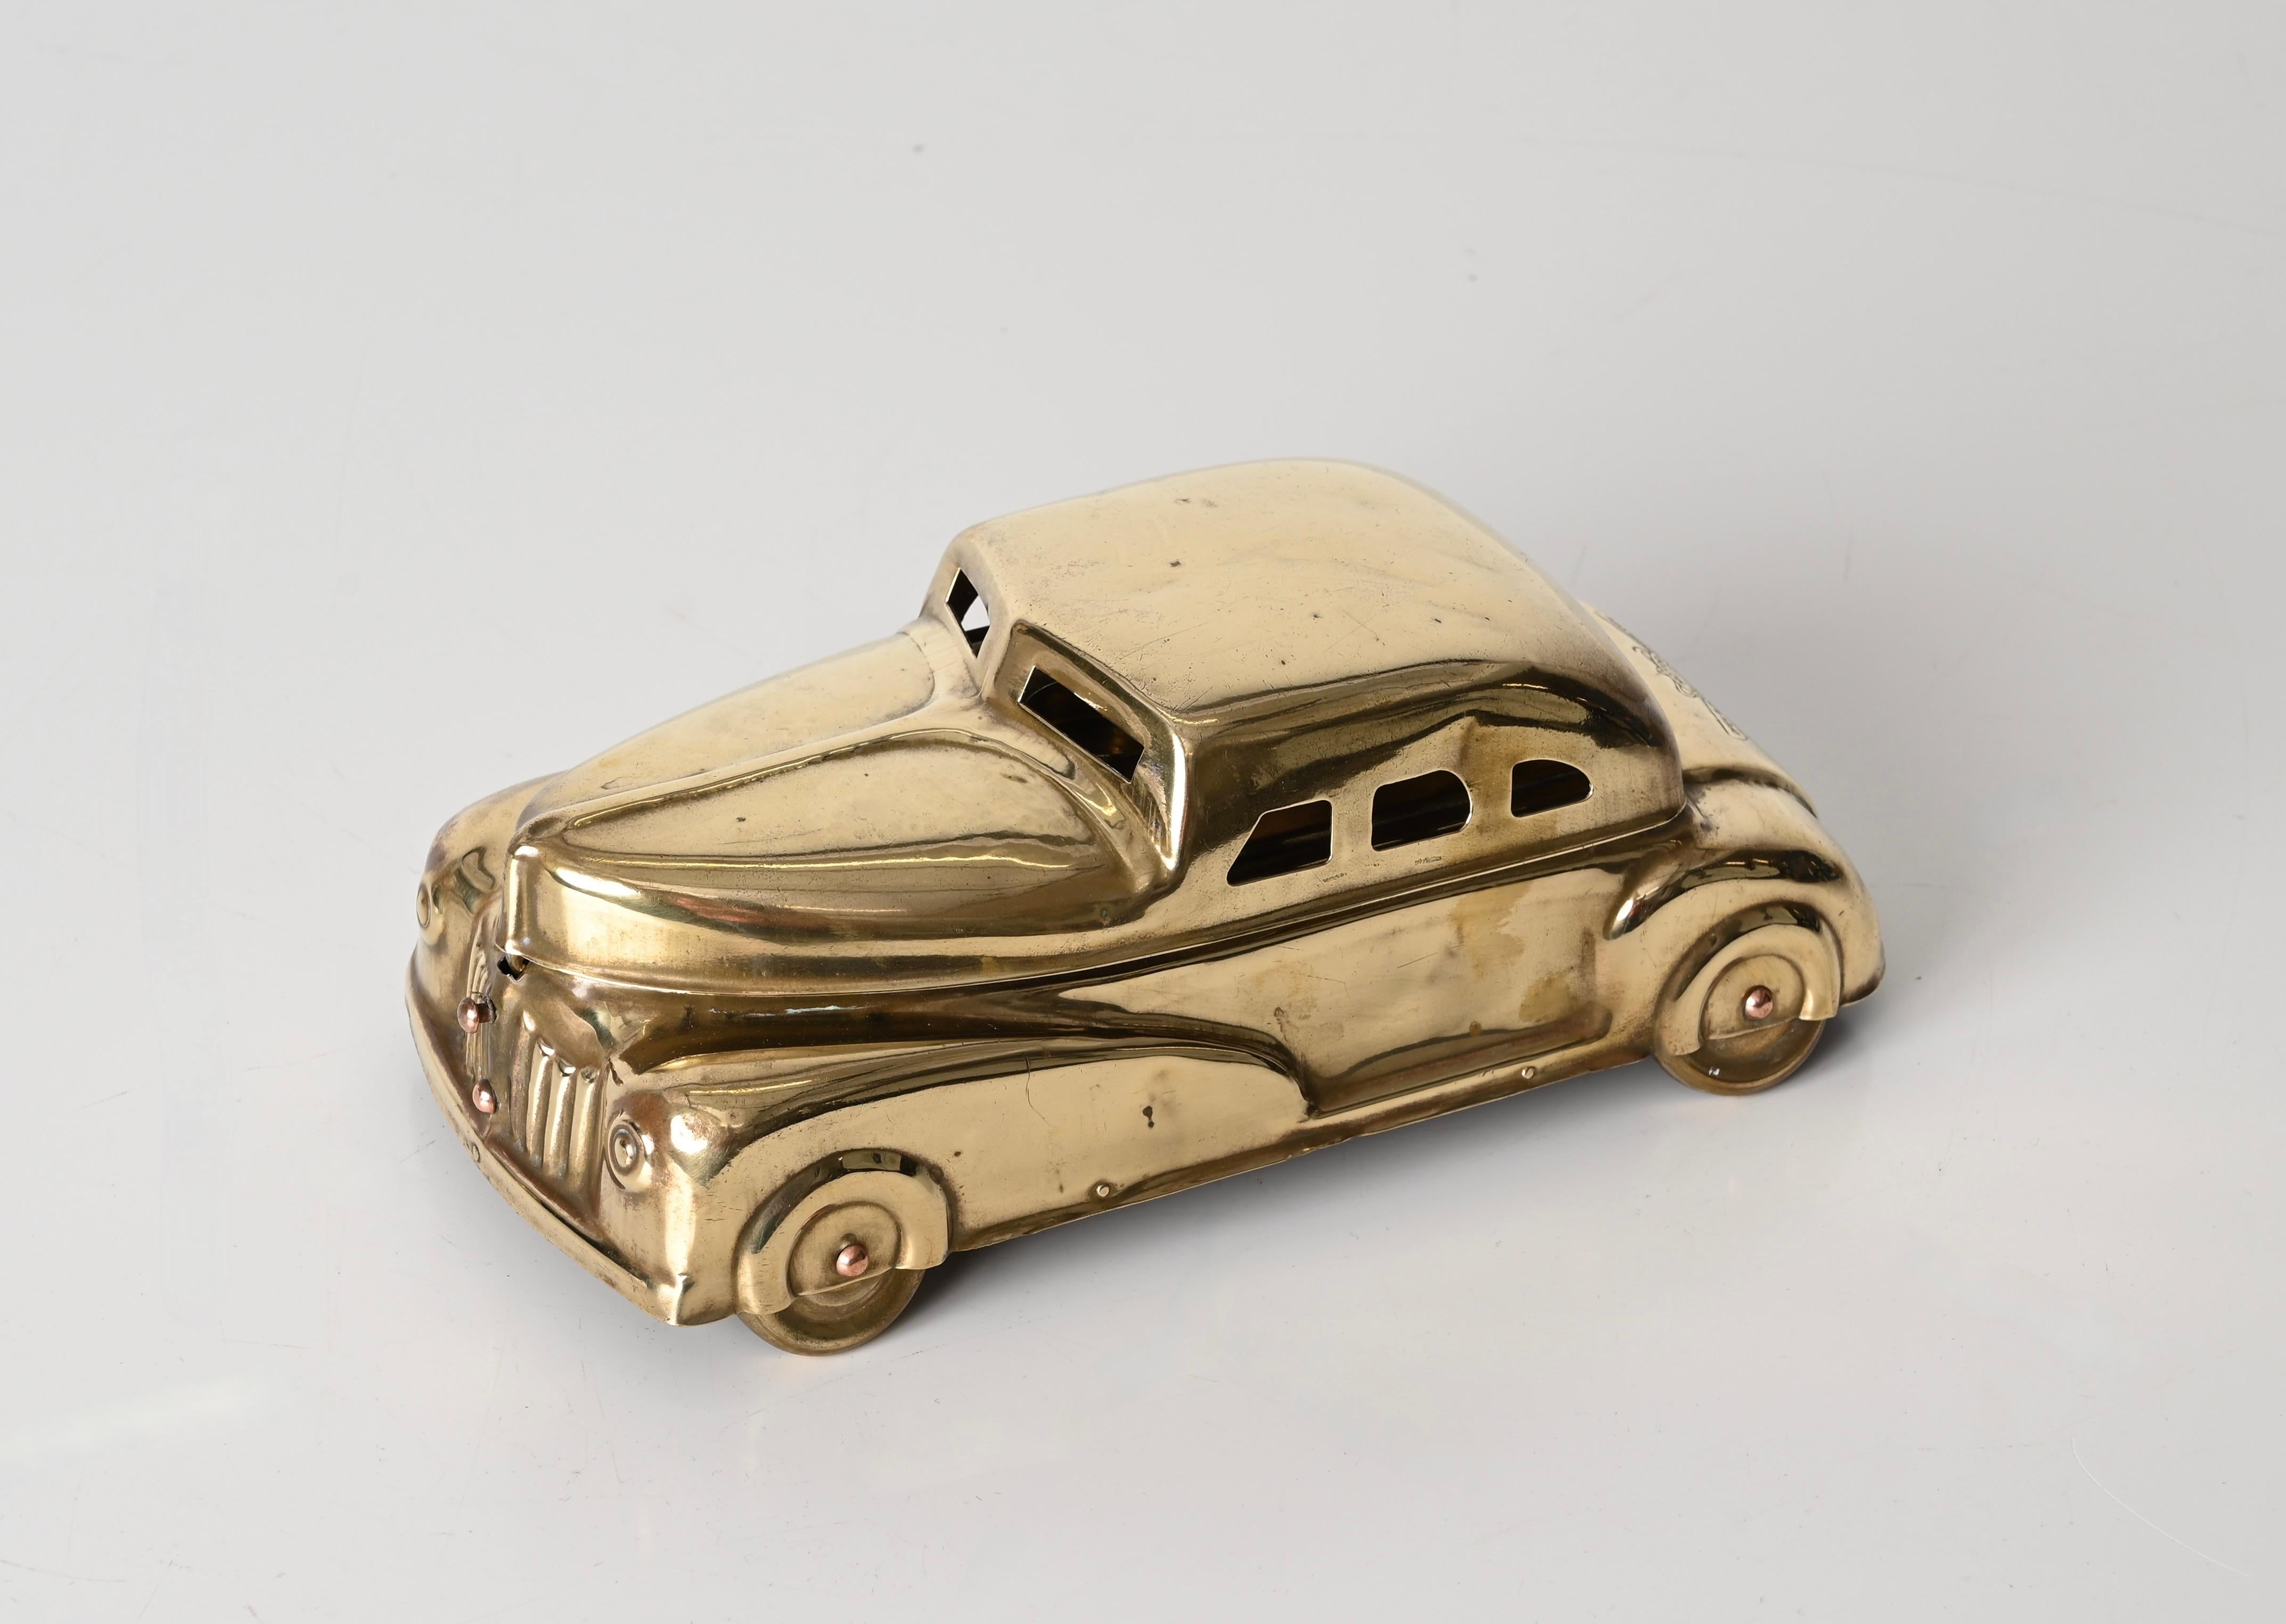 Hübsches Art Deco Modellauto komplett aus Messing. Diese charmante, vielseitig einsetzbare Modellauto-Box wurde in den 1930er Jahren in den USA hergestellt.

Patent 75086 - Dieses elegante und seltene Modellauto aus Messing kann als